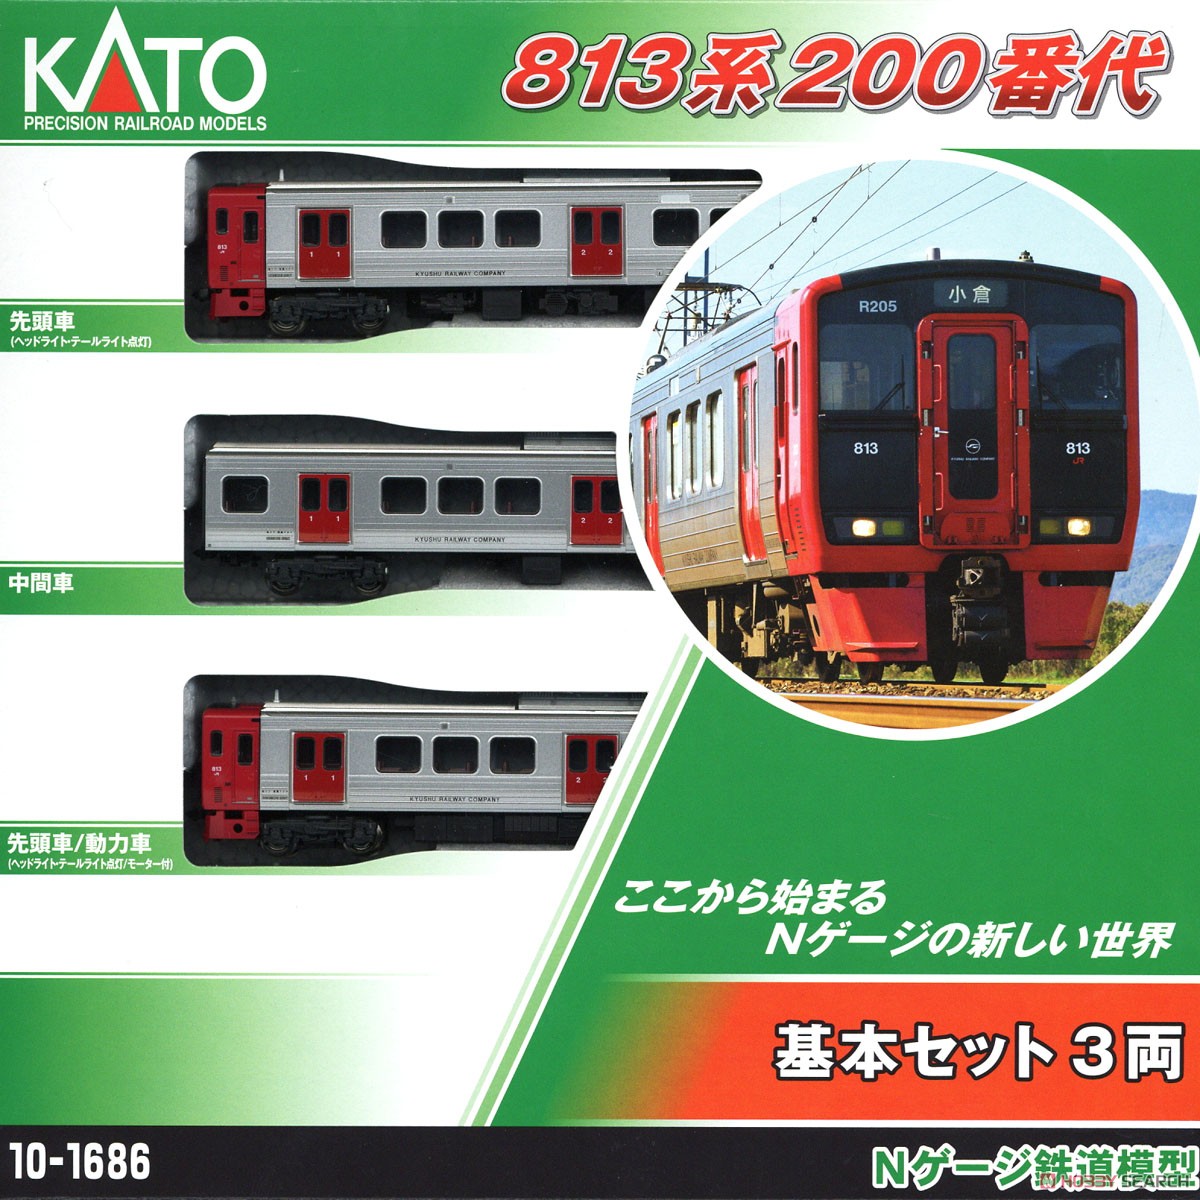 813系200番代 基本セット(3両) (基本・3両セット) (鉄道模型) パッケージ1